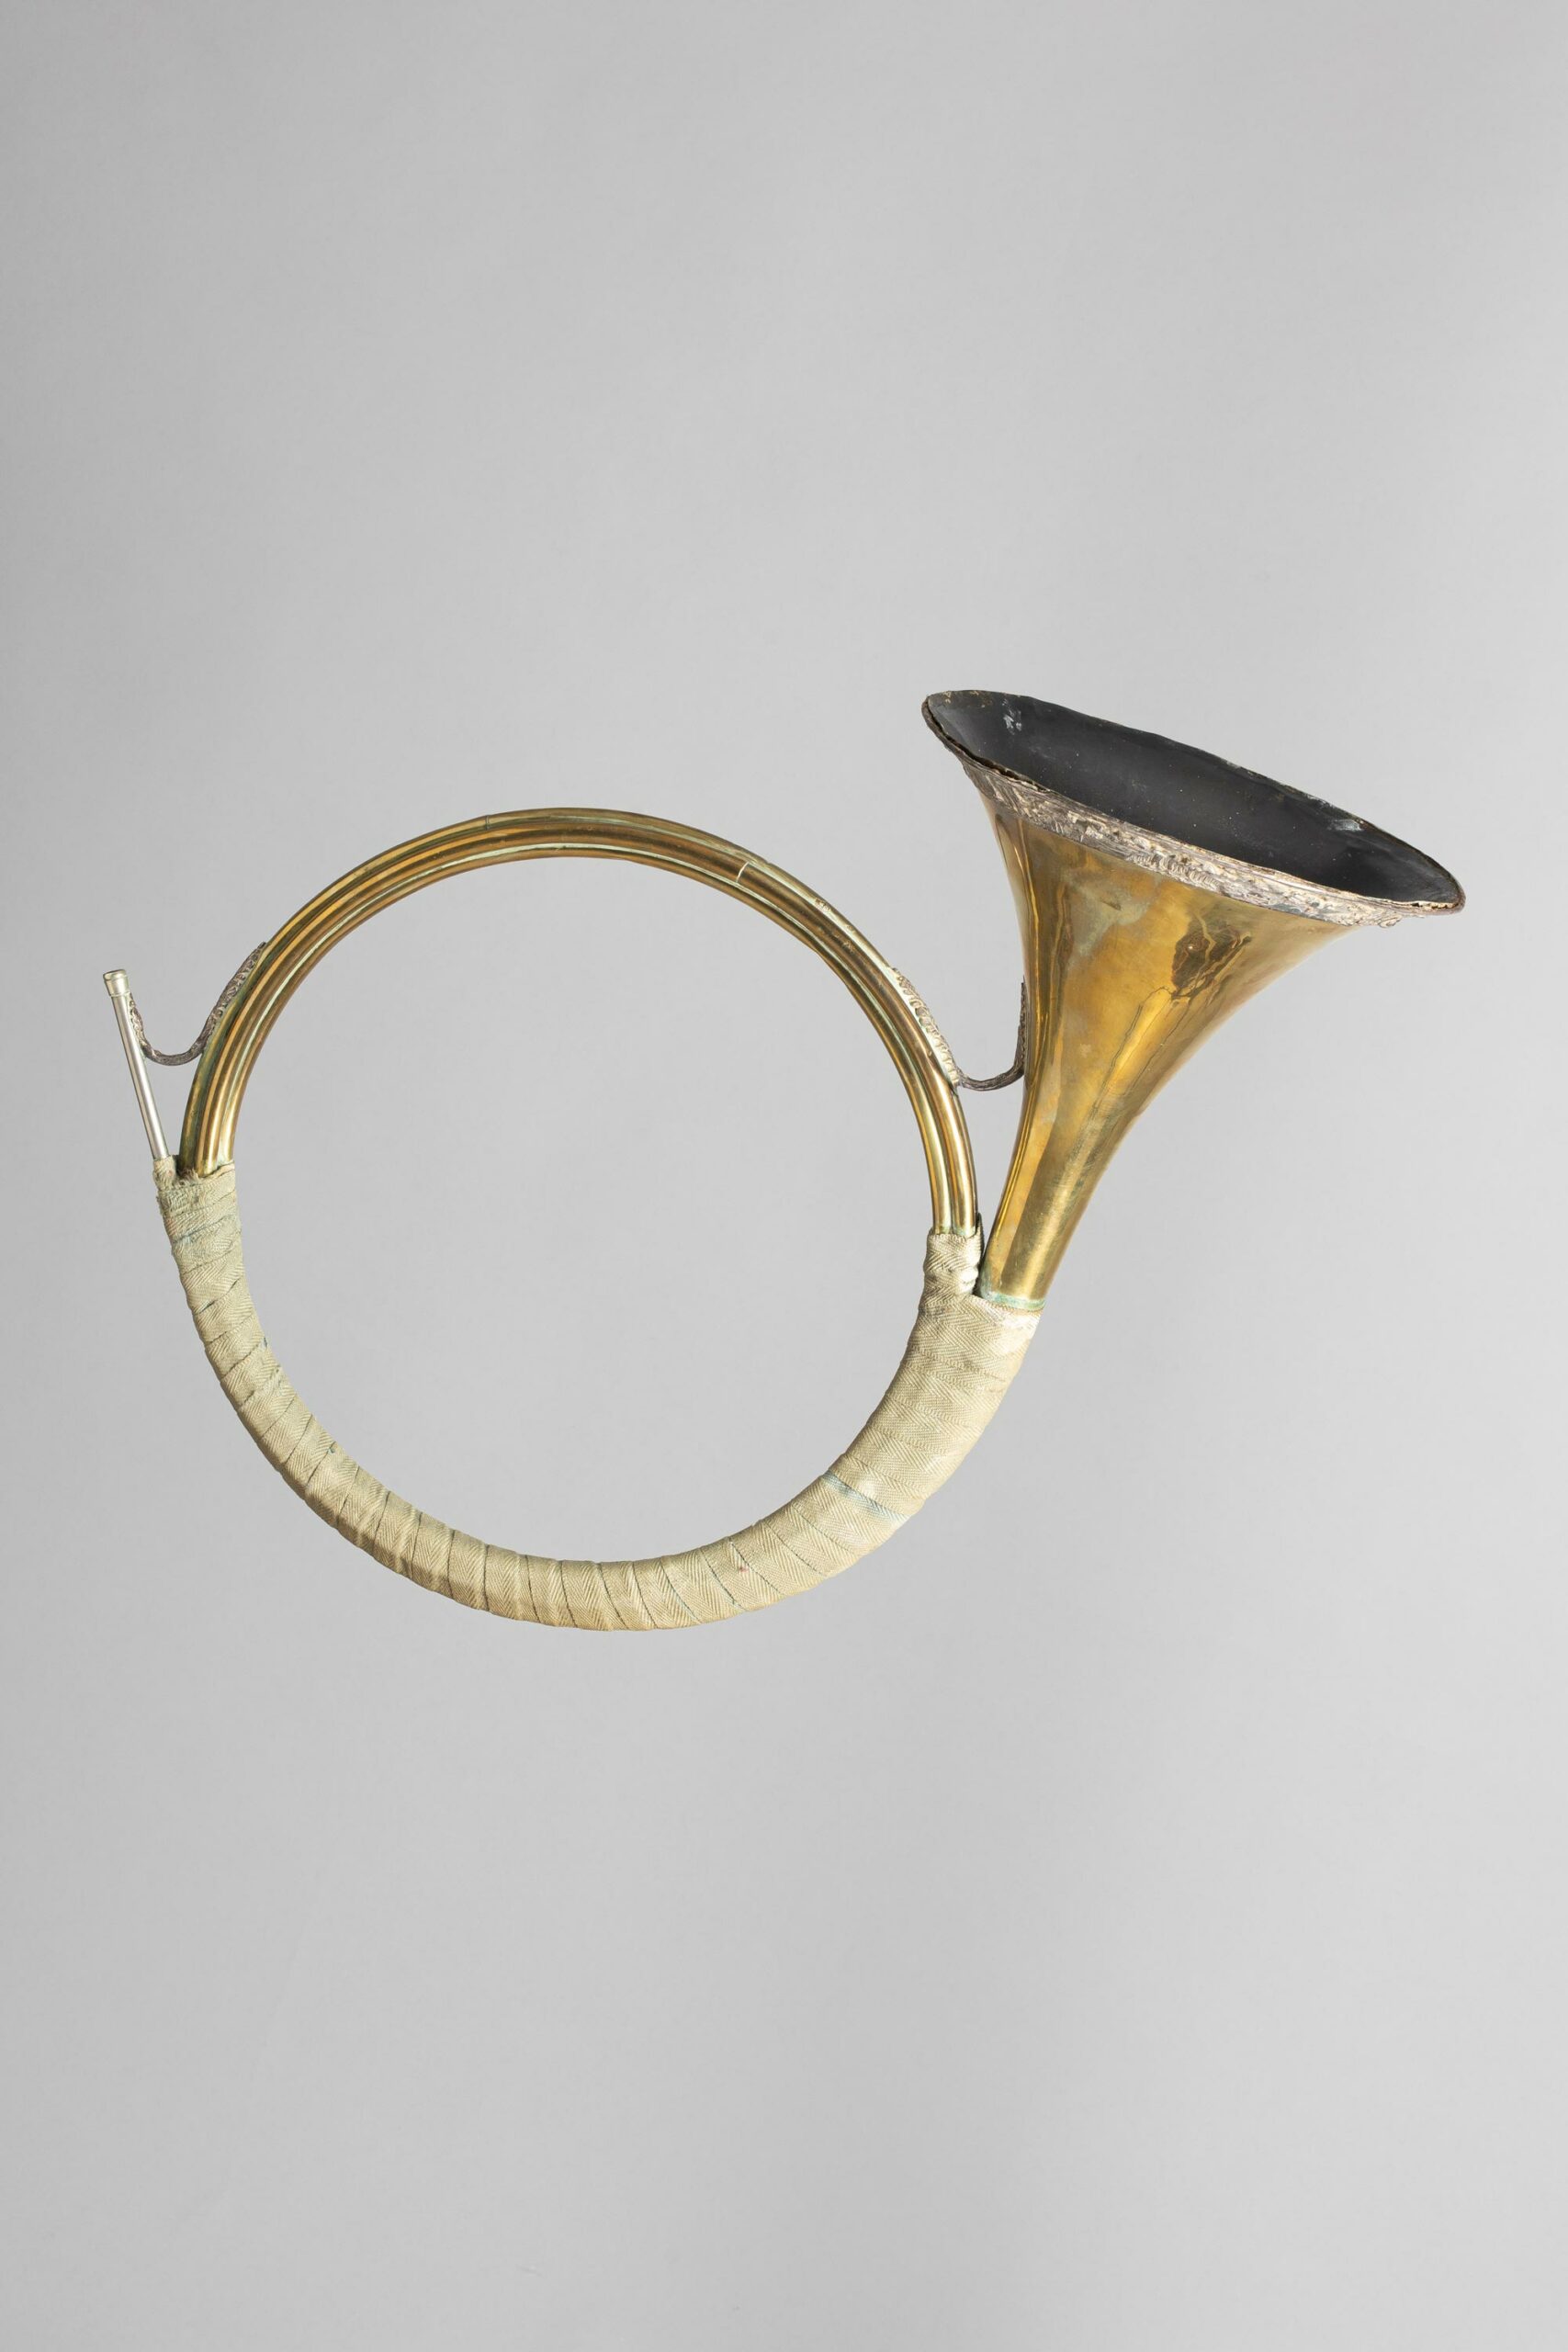 Trompe de chasse de François PÉRINET Instrument mis en vente par Vichy Enchères le 5 novembre 2022 © C. Darbelet